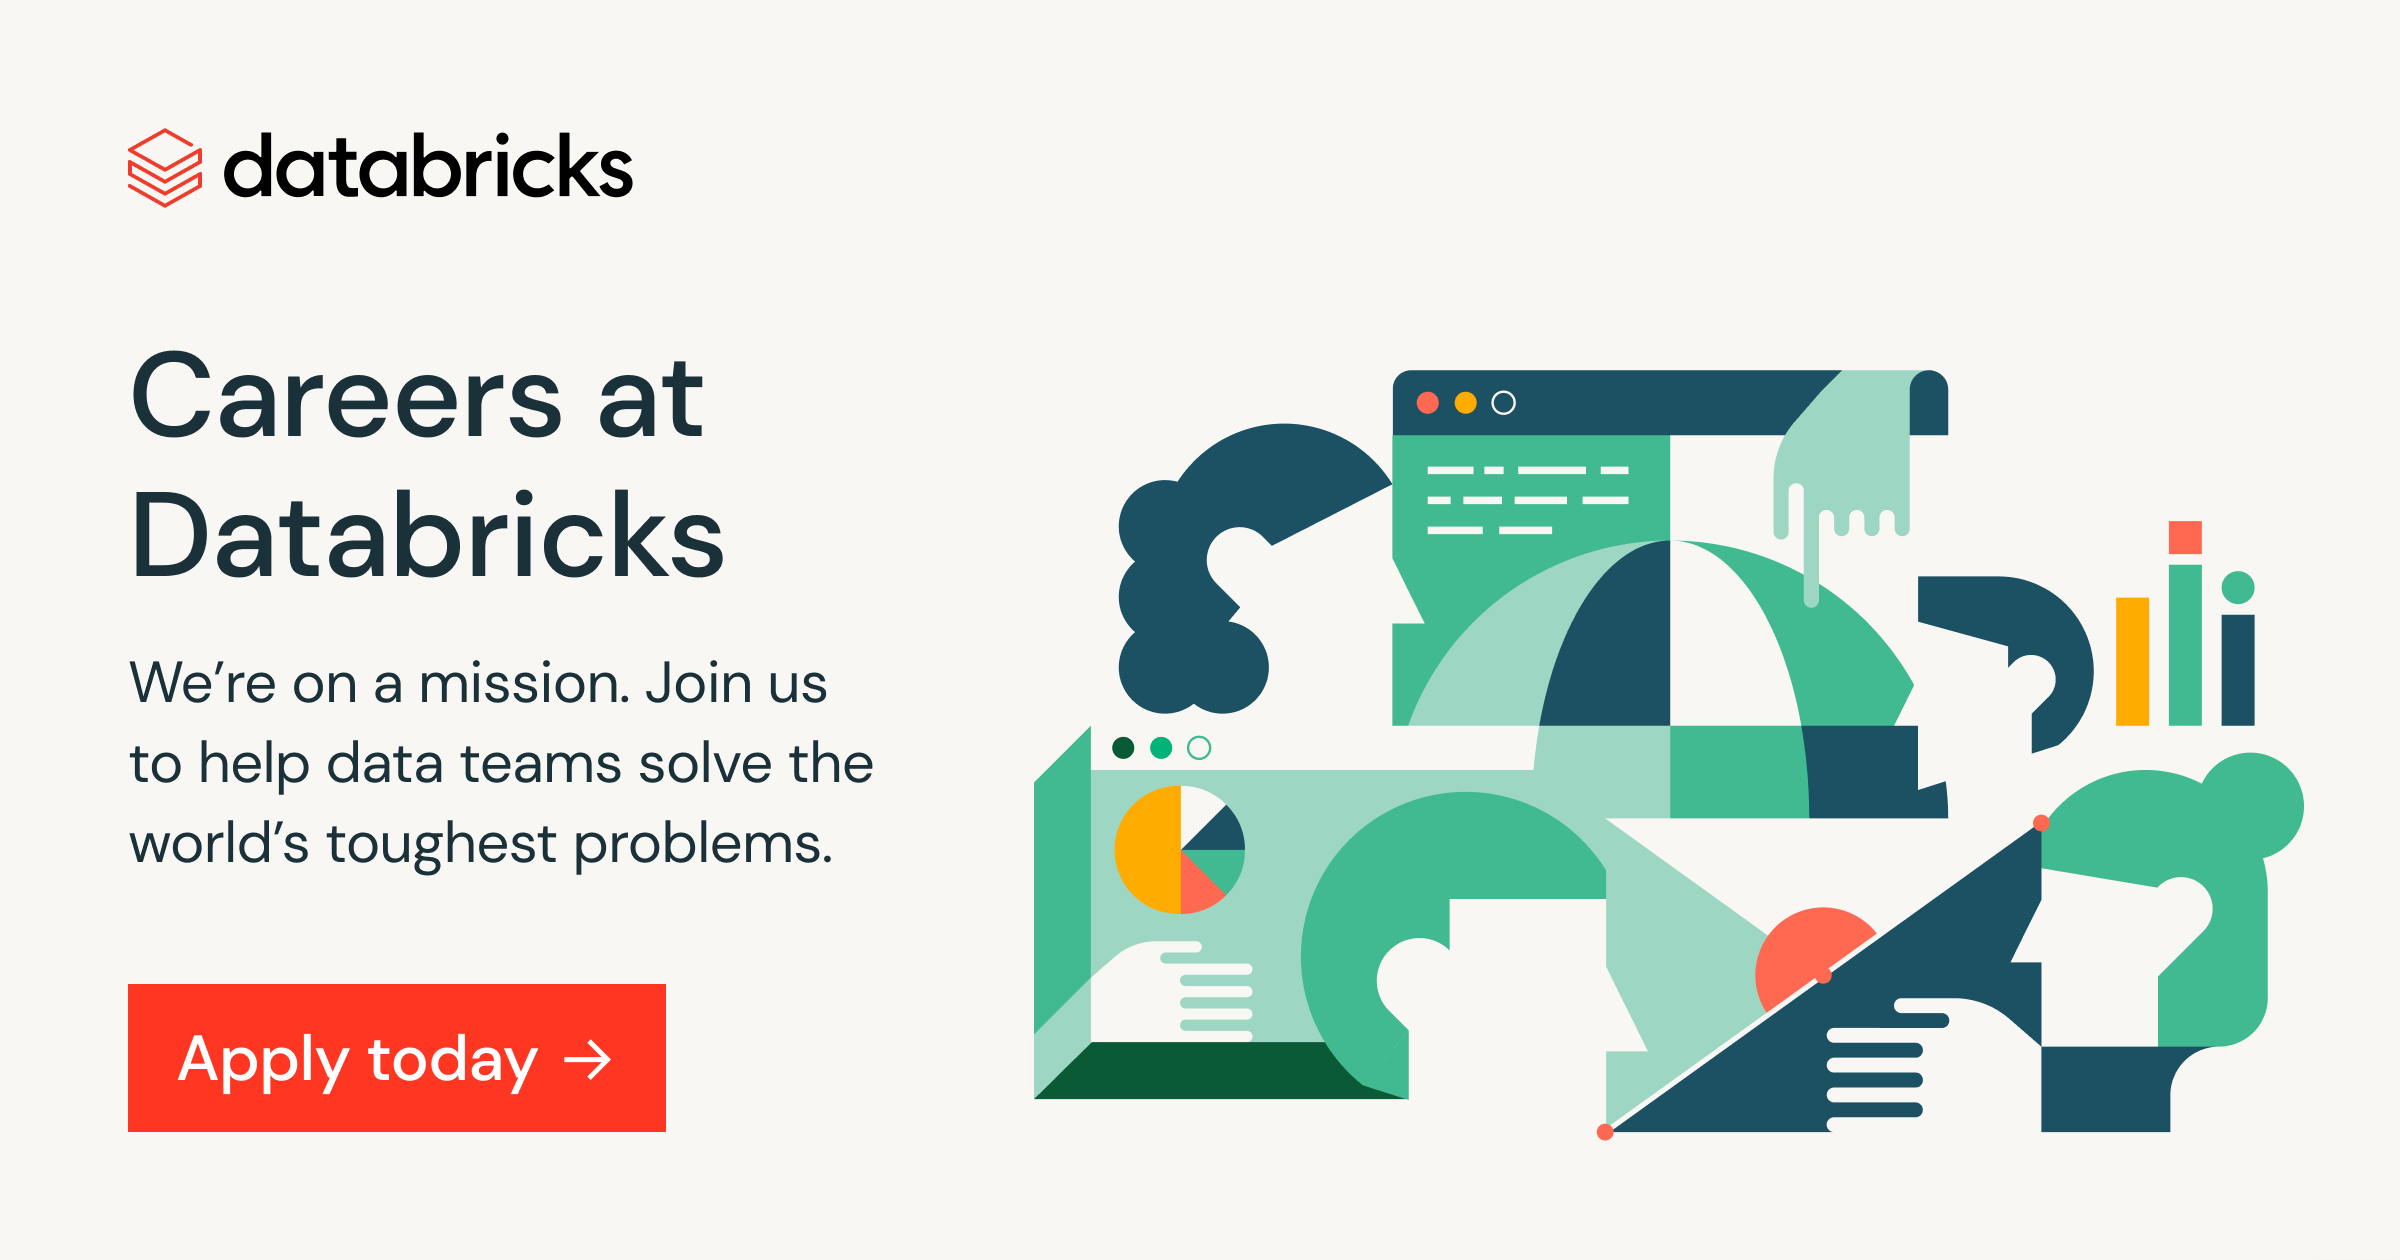 www.databricks.com